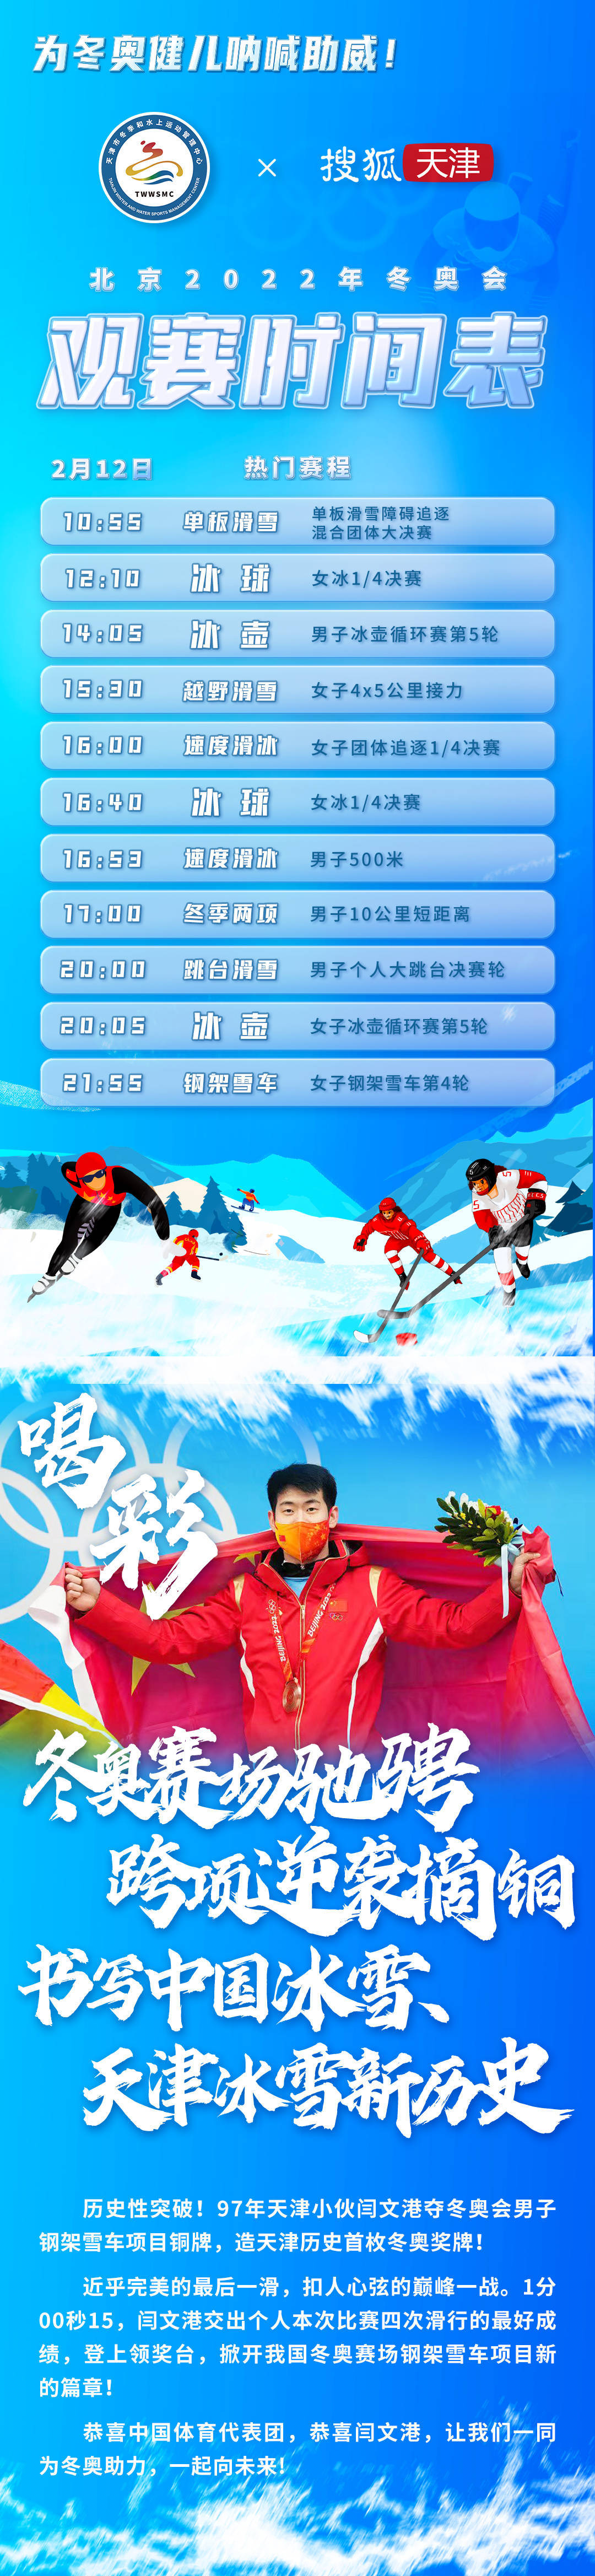 钢架|冬奥会男子钢架雪车运动员闫文港摘铜 创中国选手该项目历史最好成绩